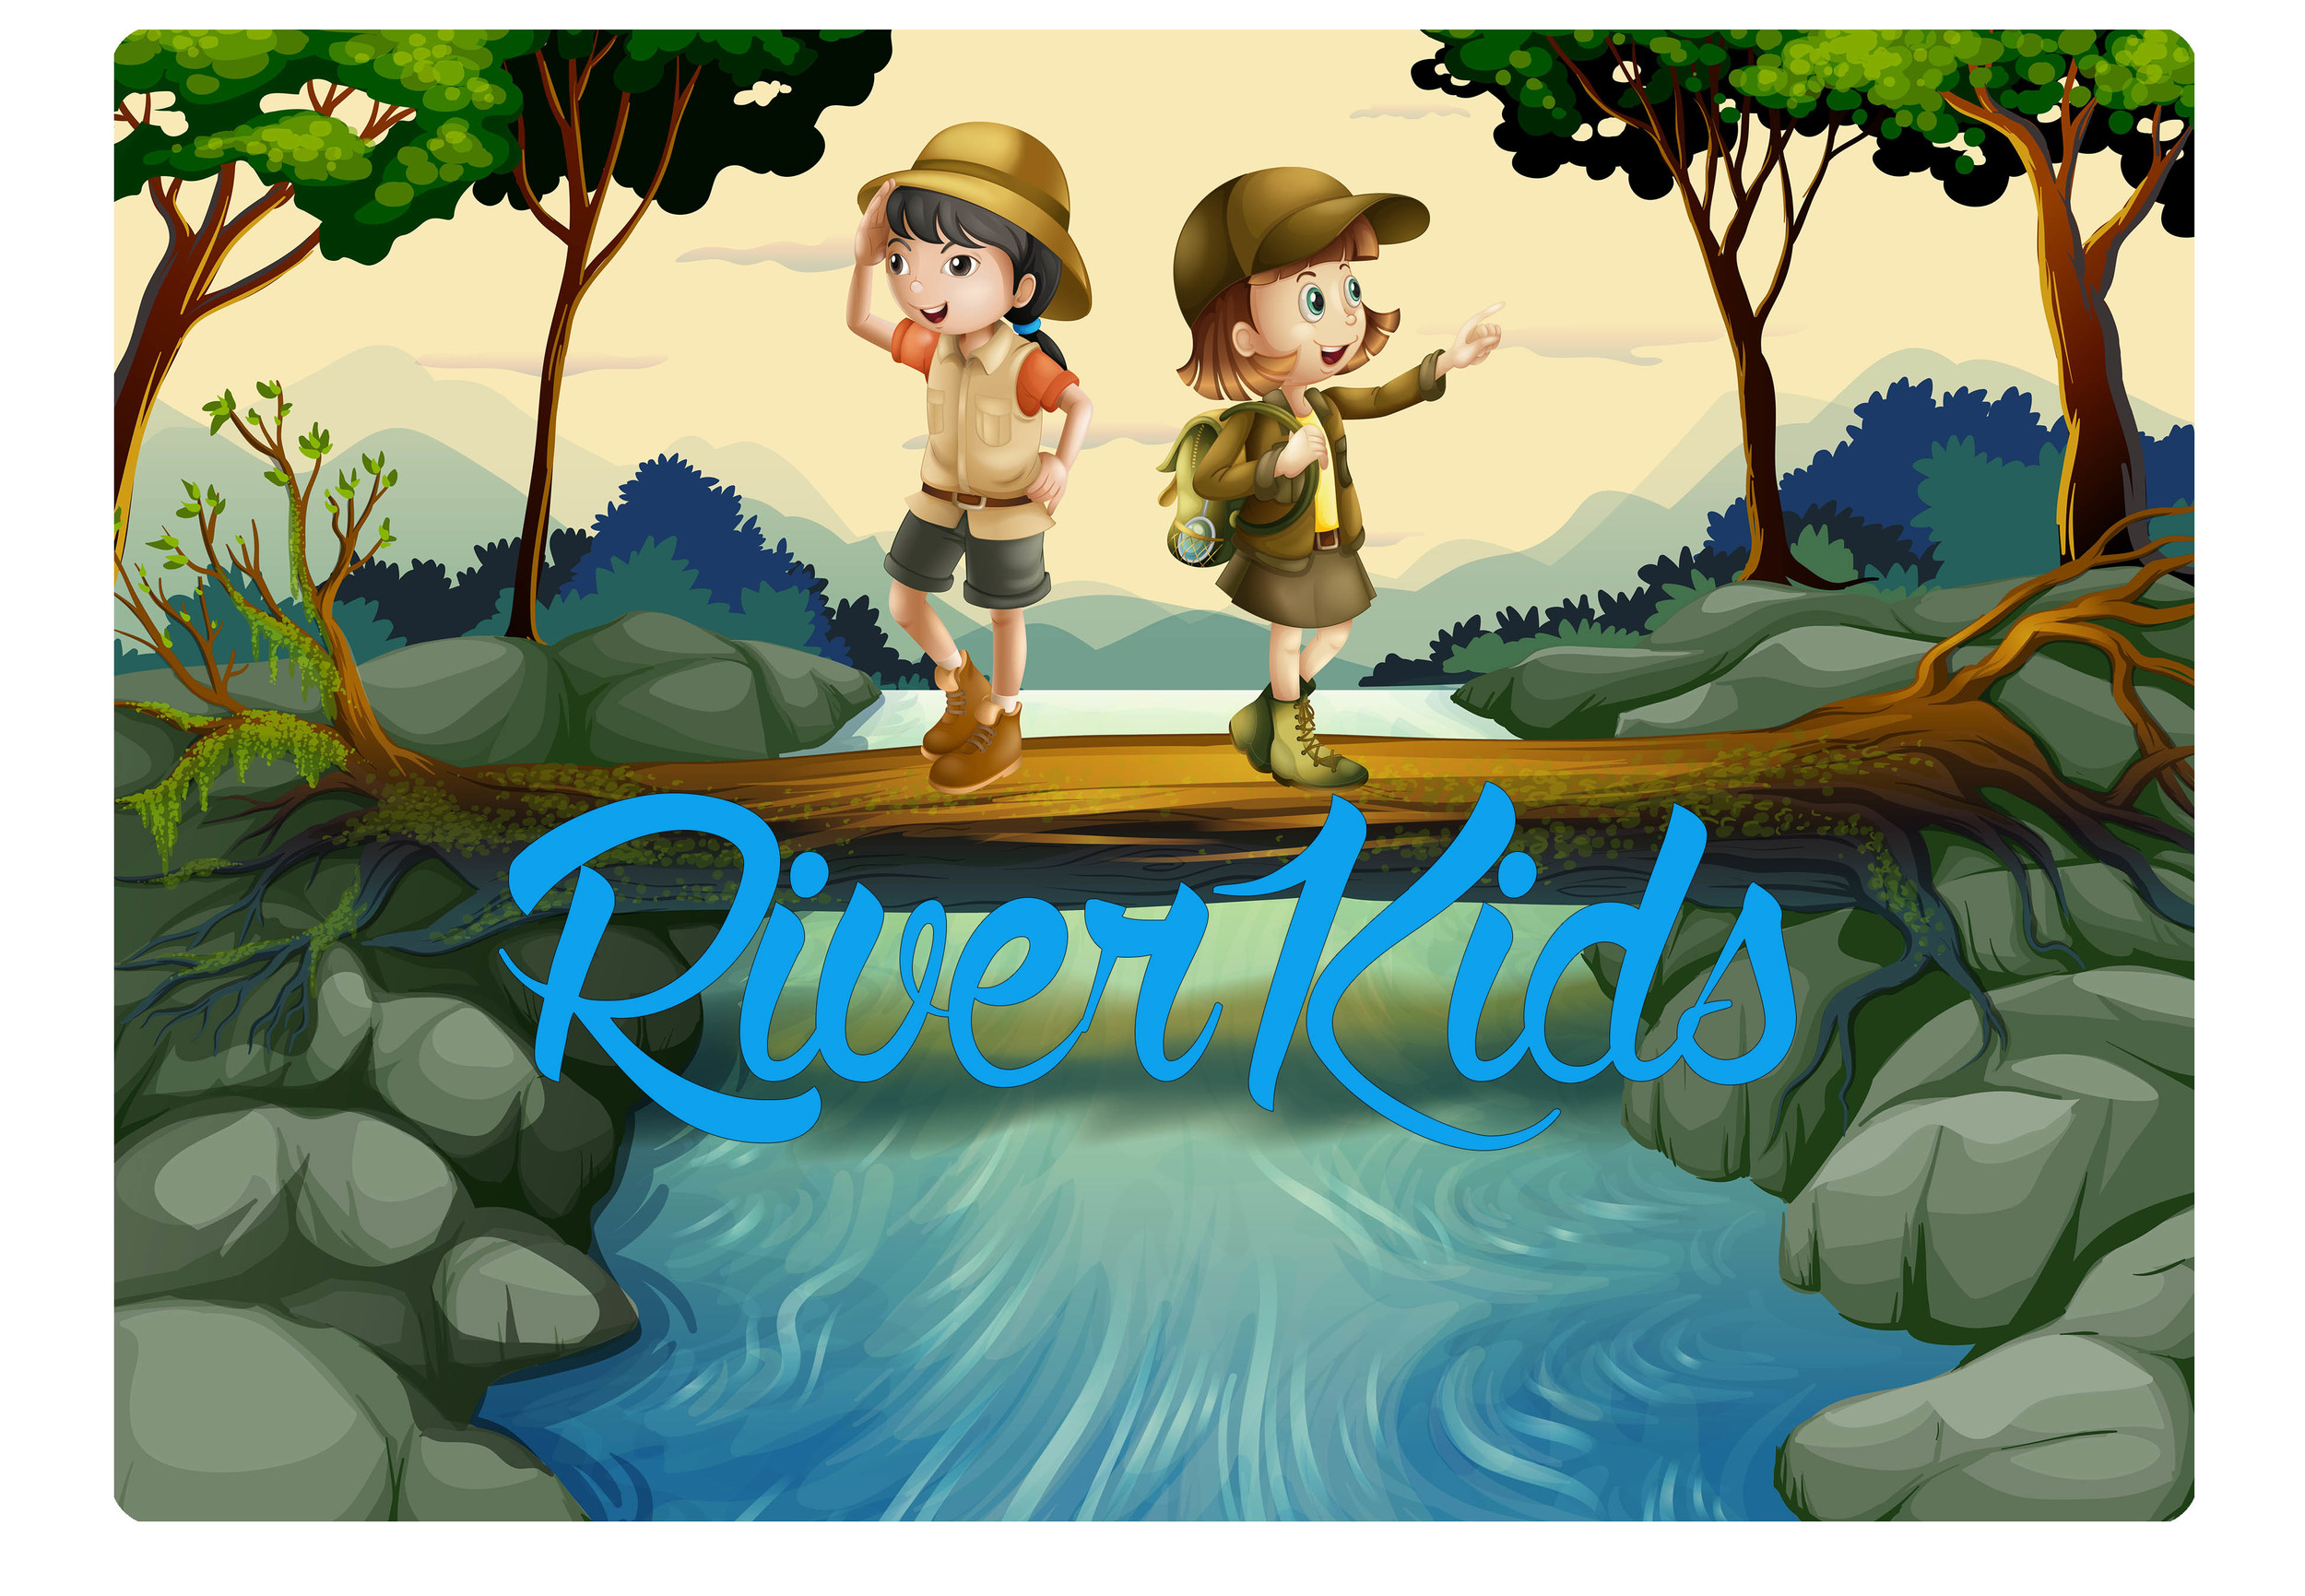 RiverKids.jpg